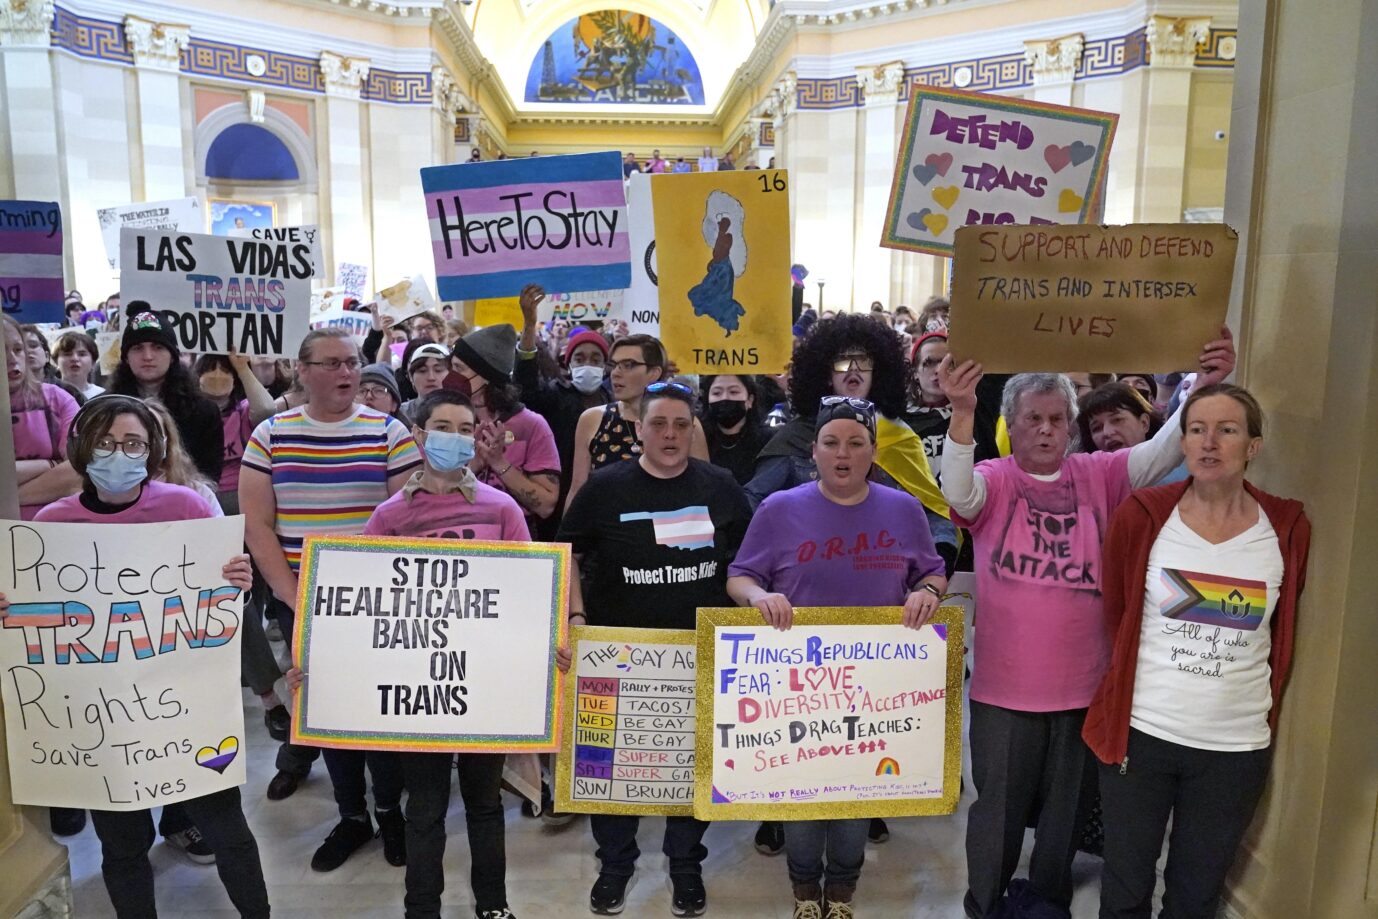 Bald sollen Geschlechtsumwandlungen an Minderjährigen in Oklahoma verboten sein – aus Protest besetzen Menschenmassen unter LGBTQ-Losungen das Kapitol